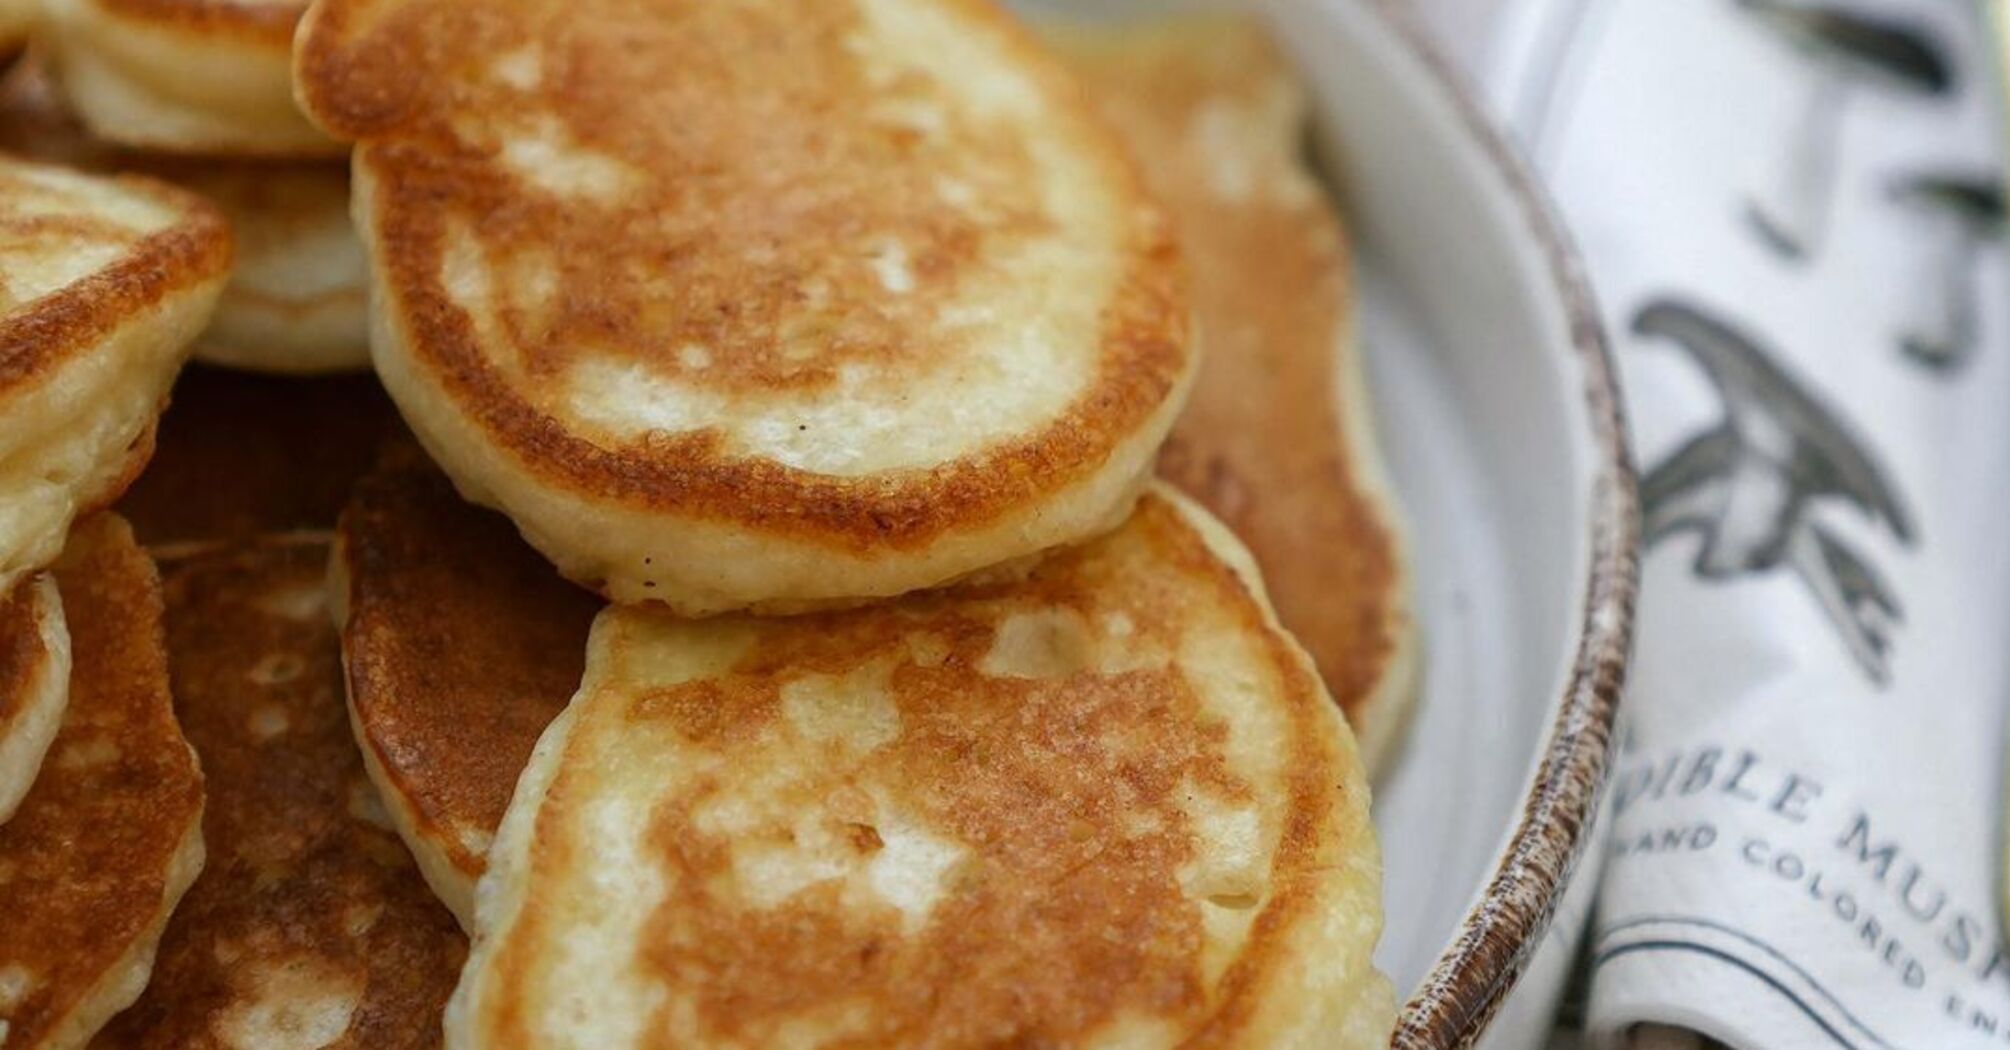 Lush pancakes on kefir